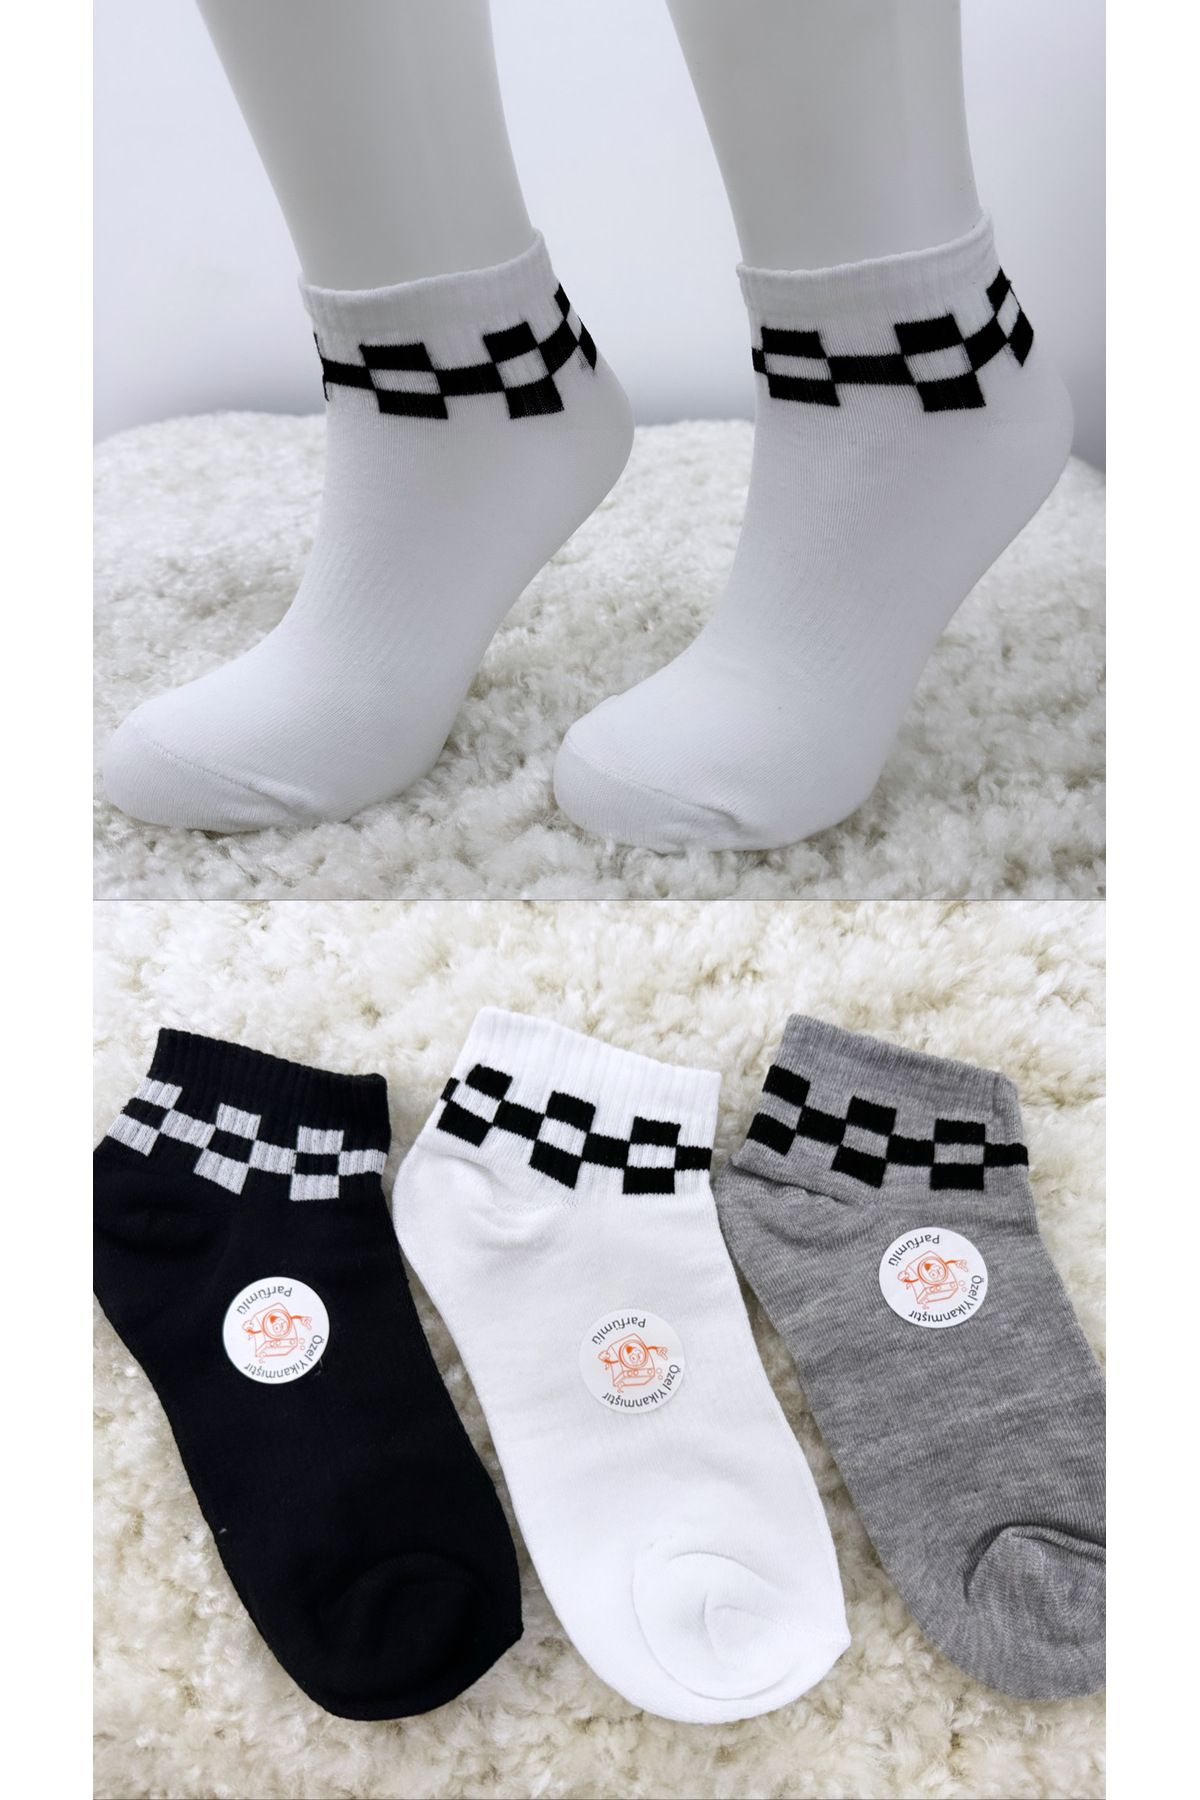 armonika Kadın Bilek Üstü Kareli Kısa Kokulu Patik Çorap 3'lü Paket